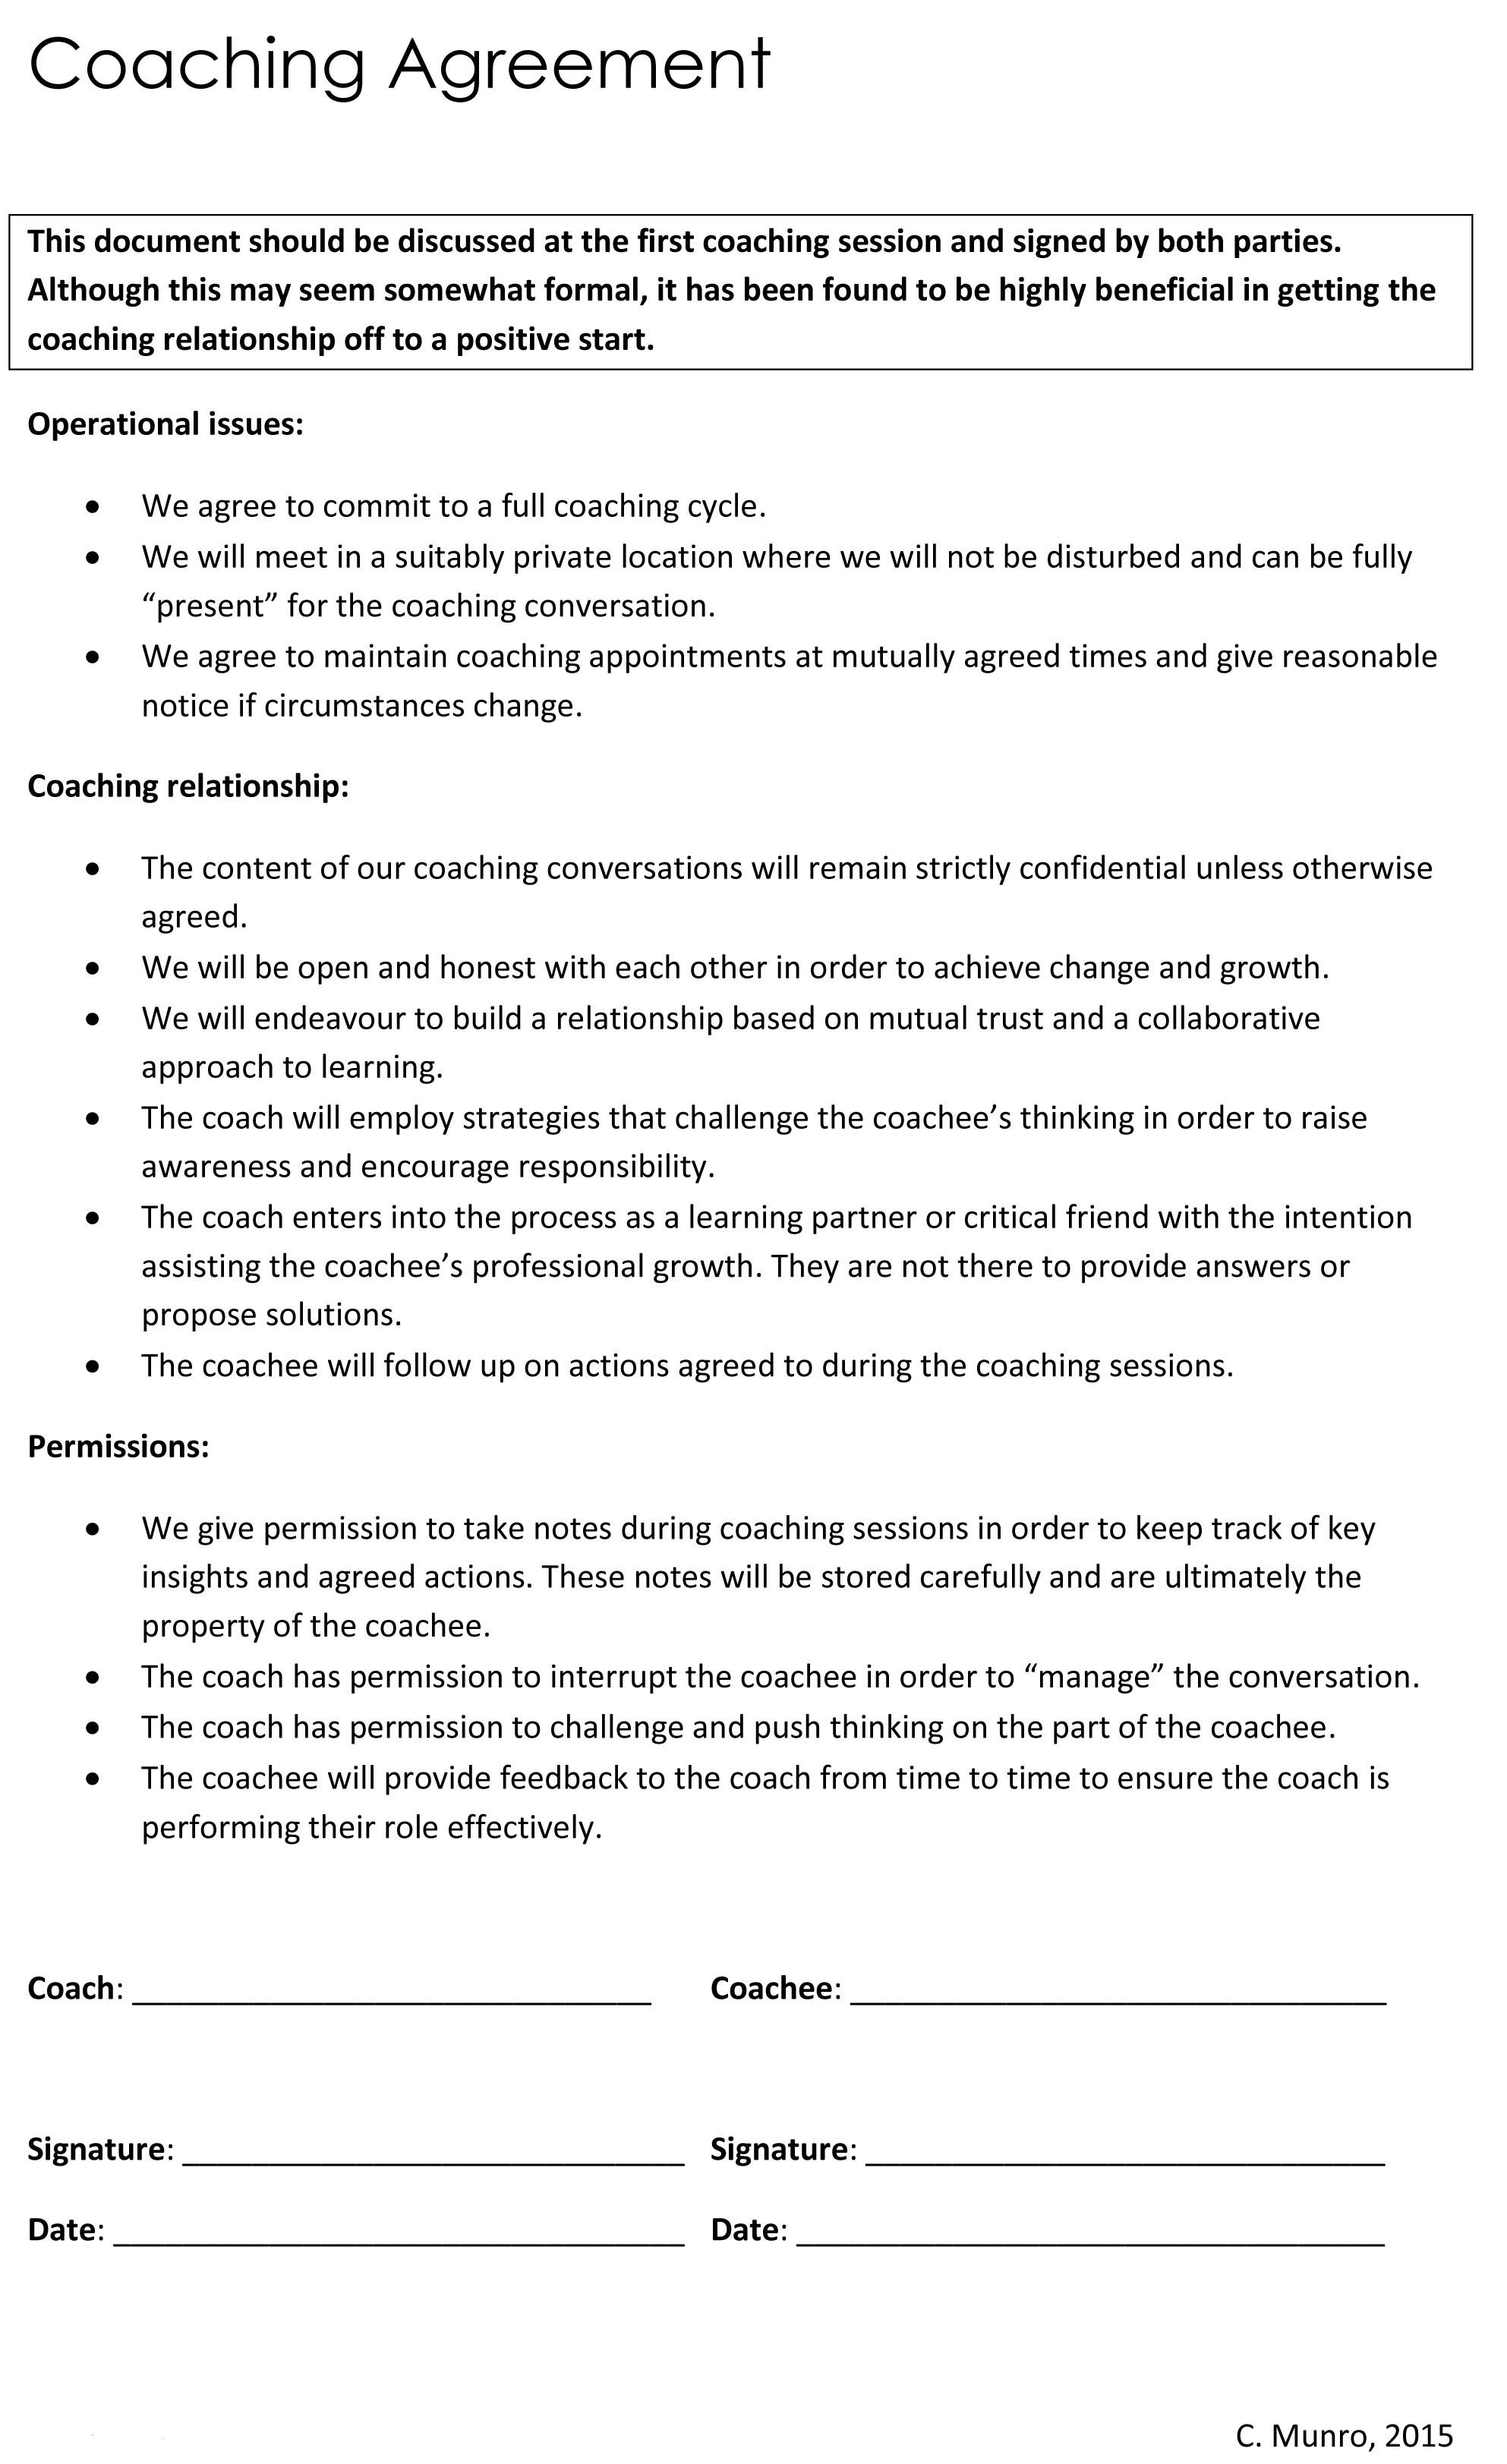 Coaching Agreement Form Coaching A Coaching Journey